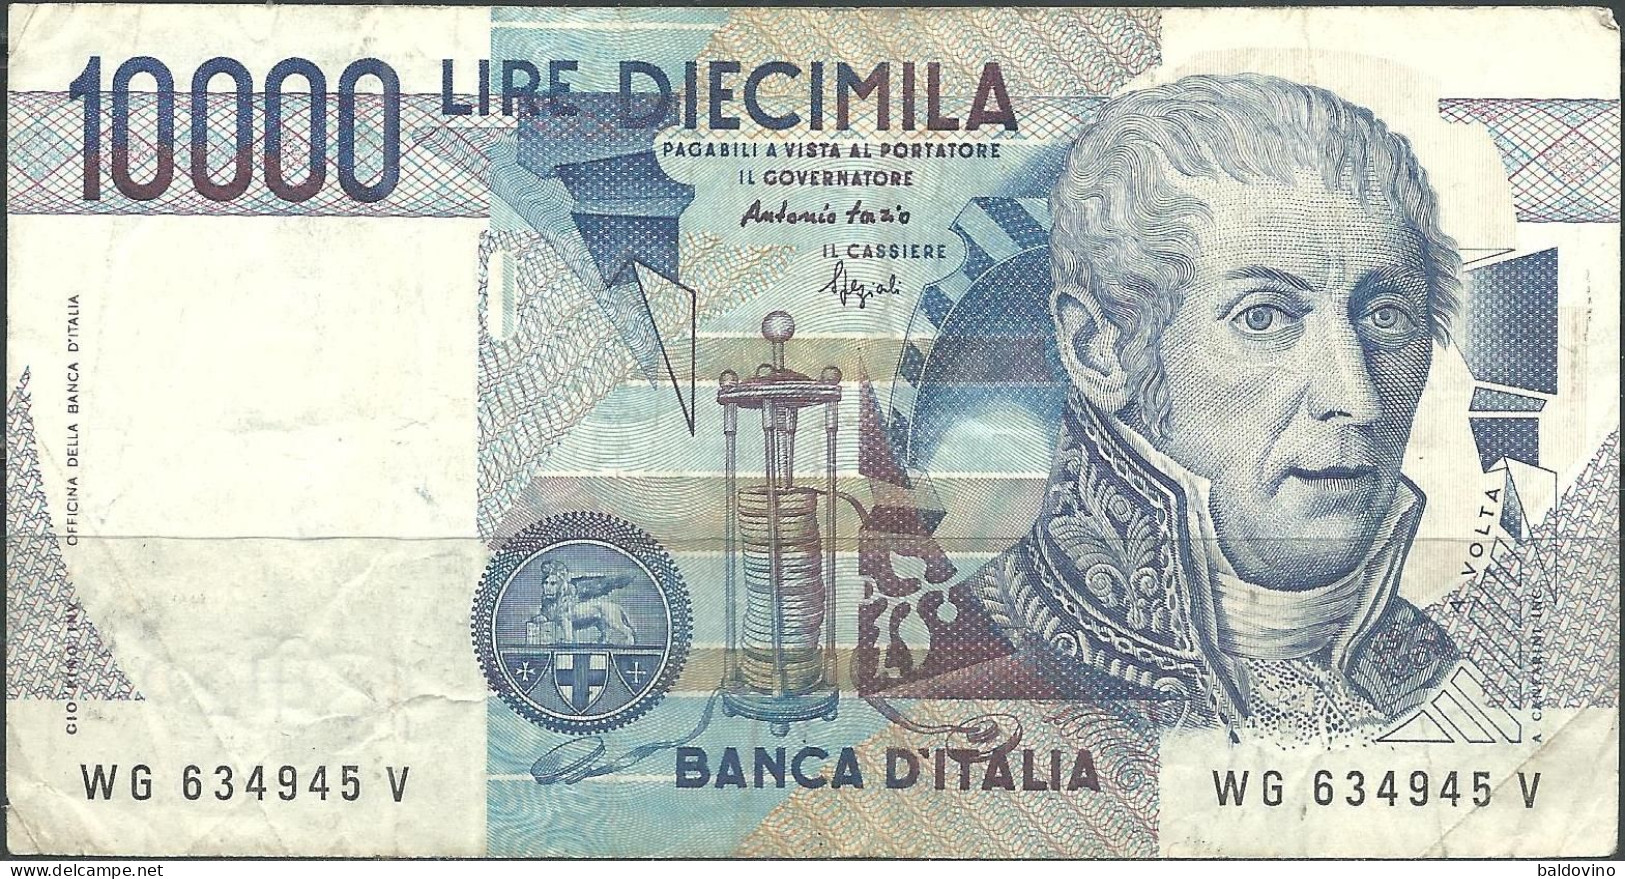 Italia 1996 10000 £. A. Volta - 10000 Lire